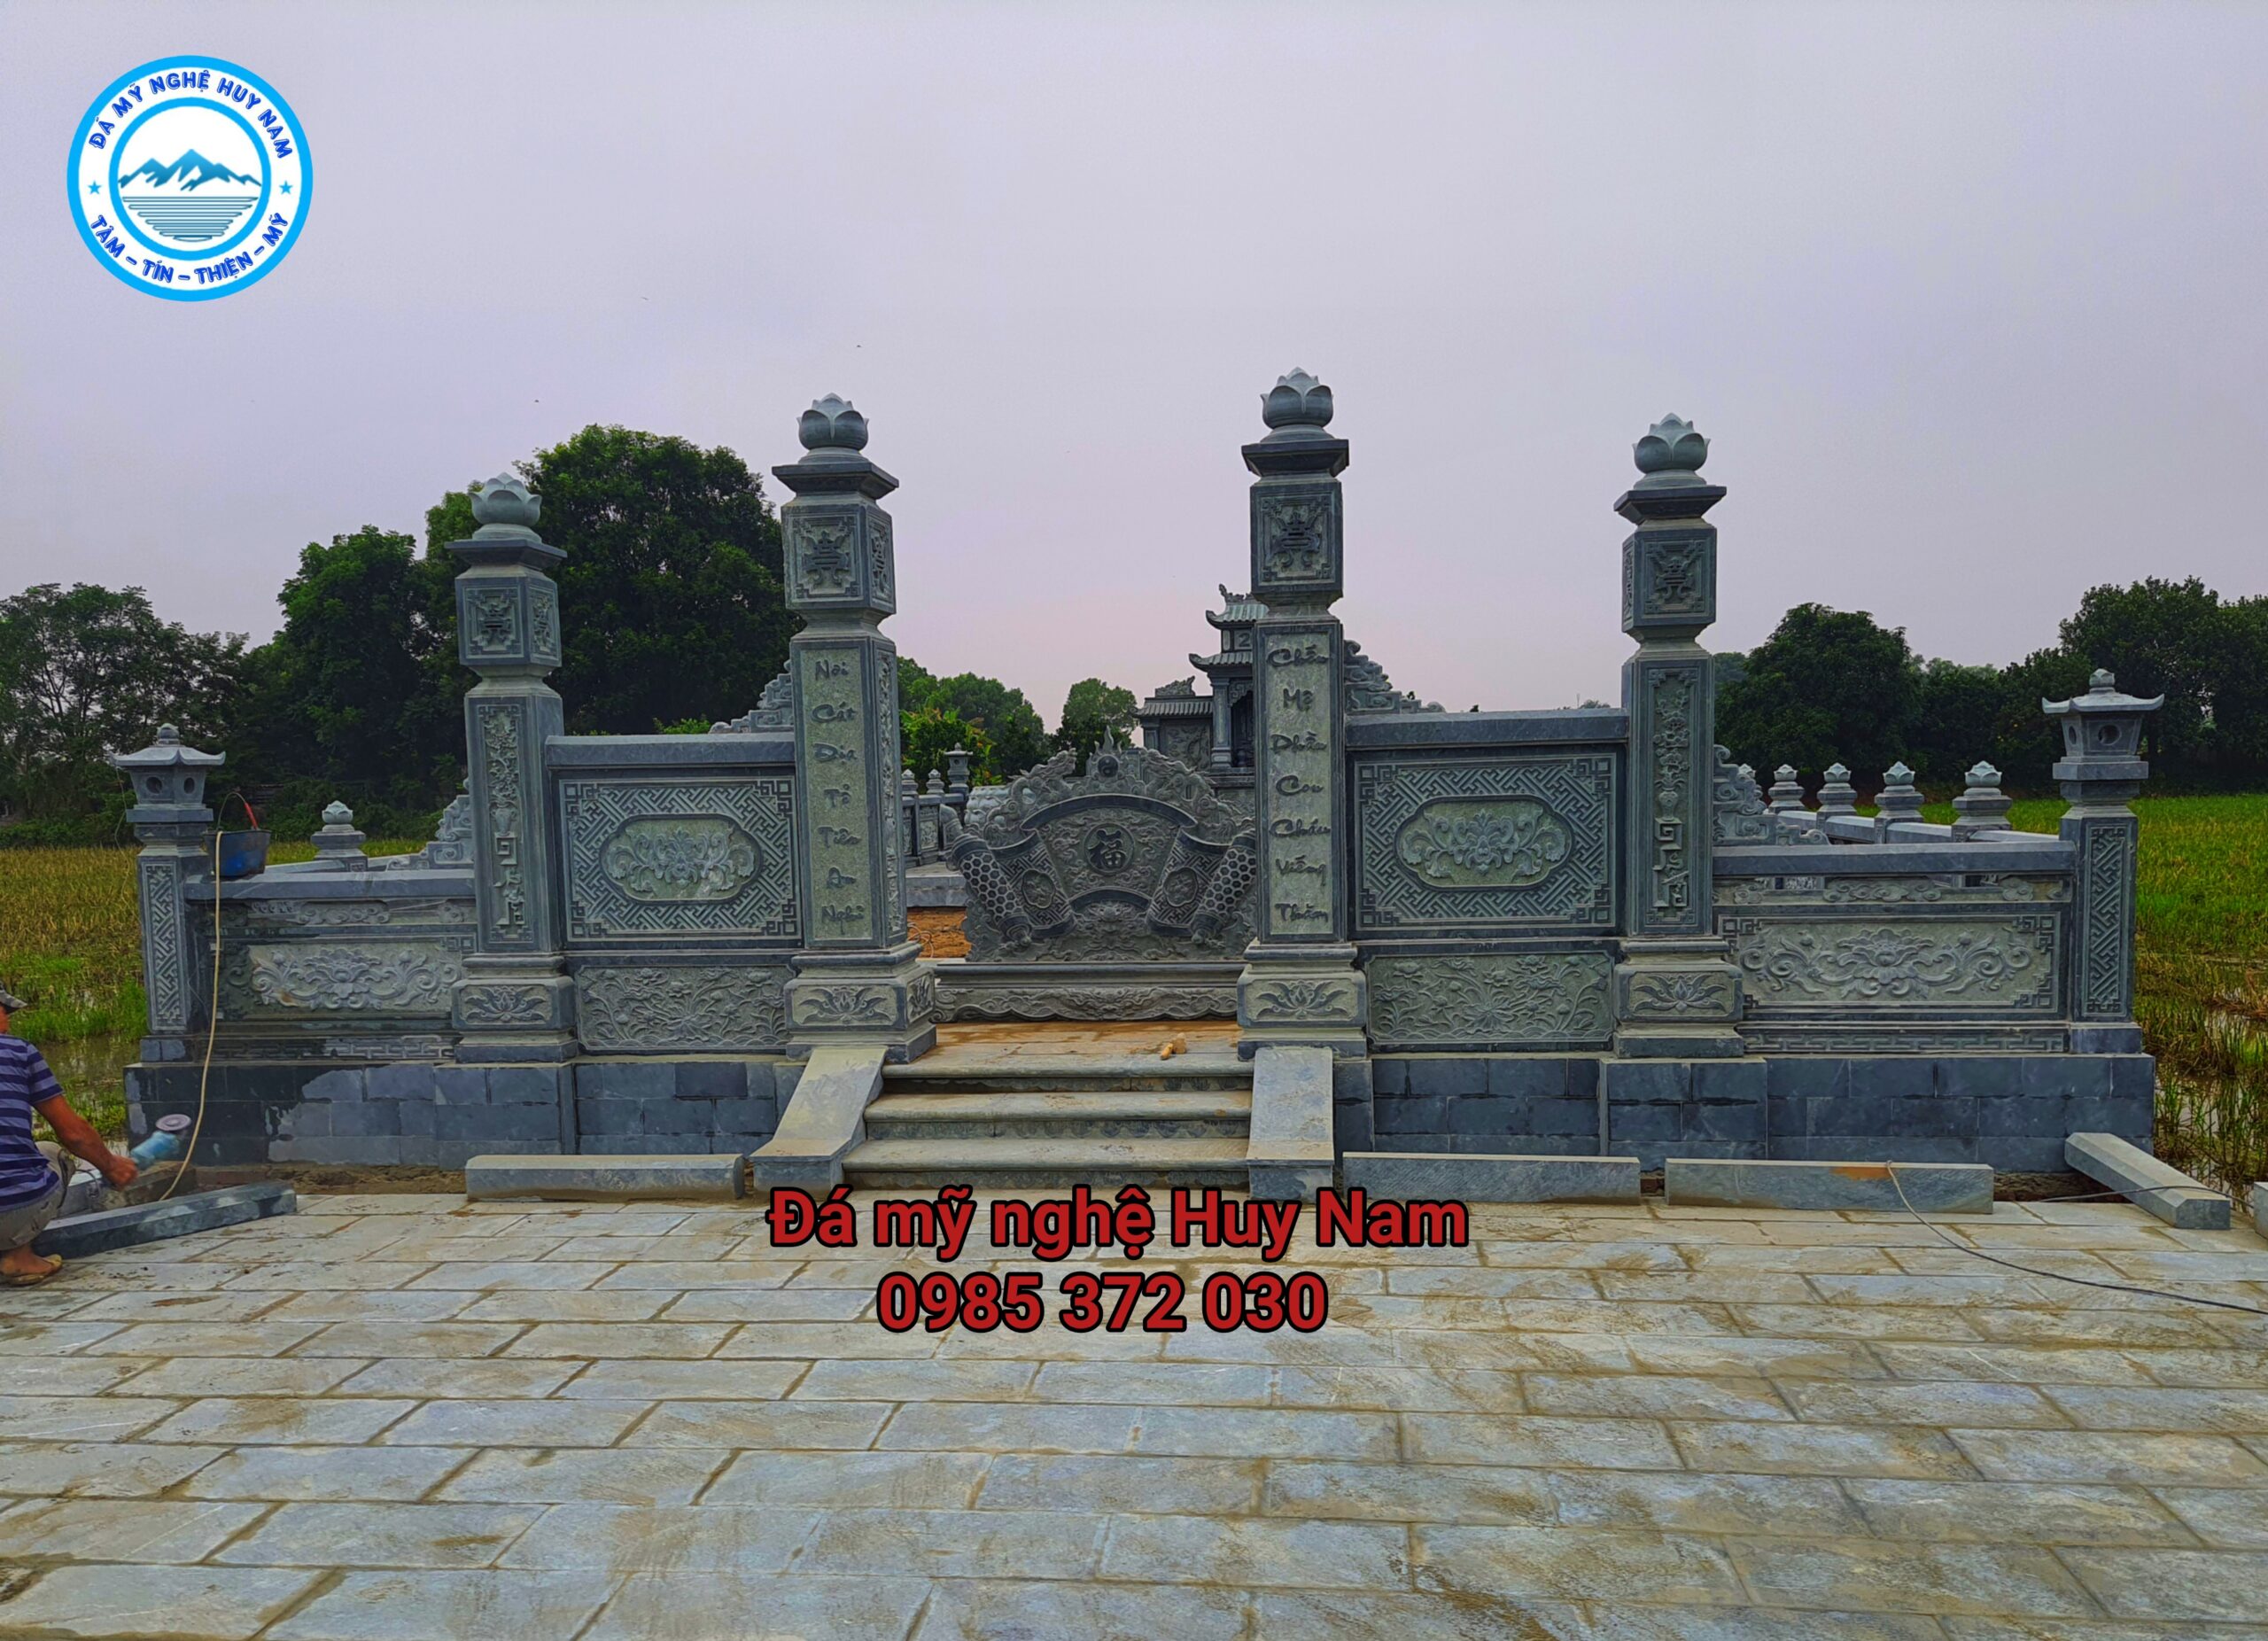 Khu lăng mộ đá xanh rêu đẹp tại Thường Tín, Hà Nộichụp trực diện - hình ảnh cổng tứ trụ khu lăng mộ đá